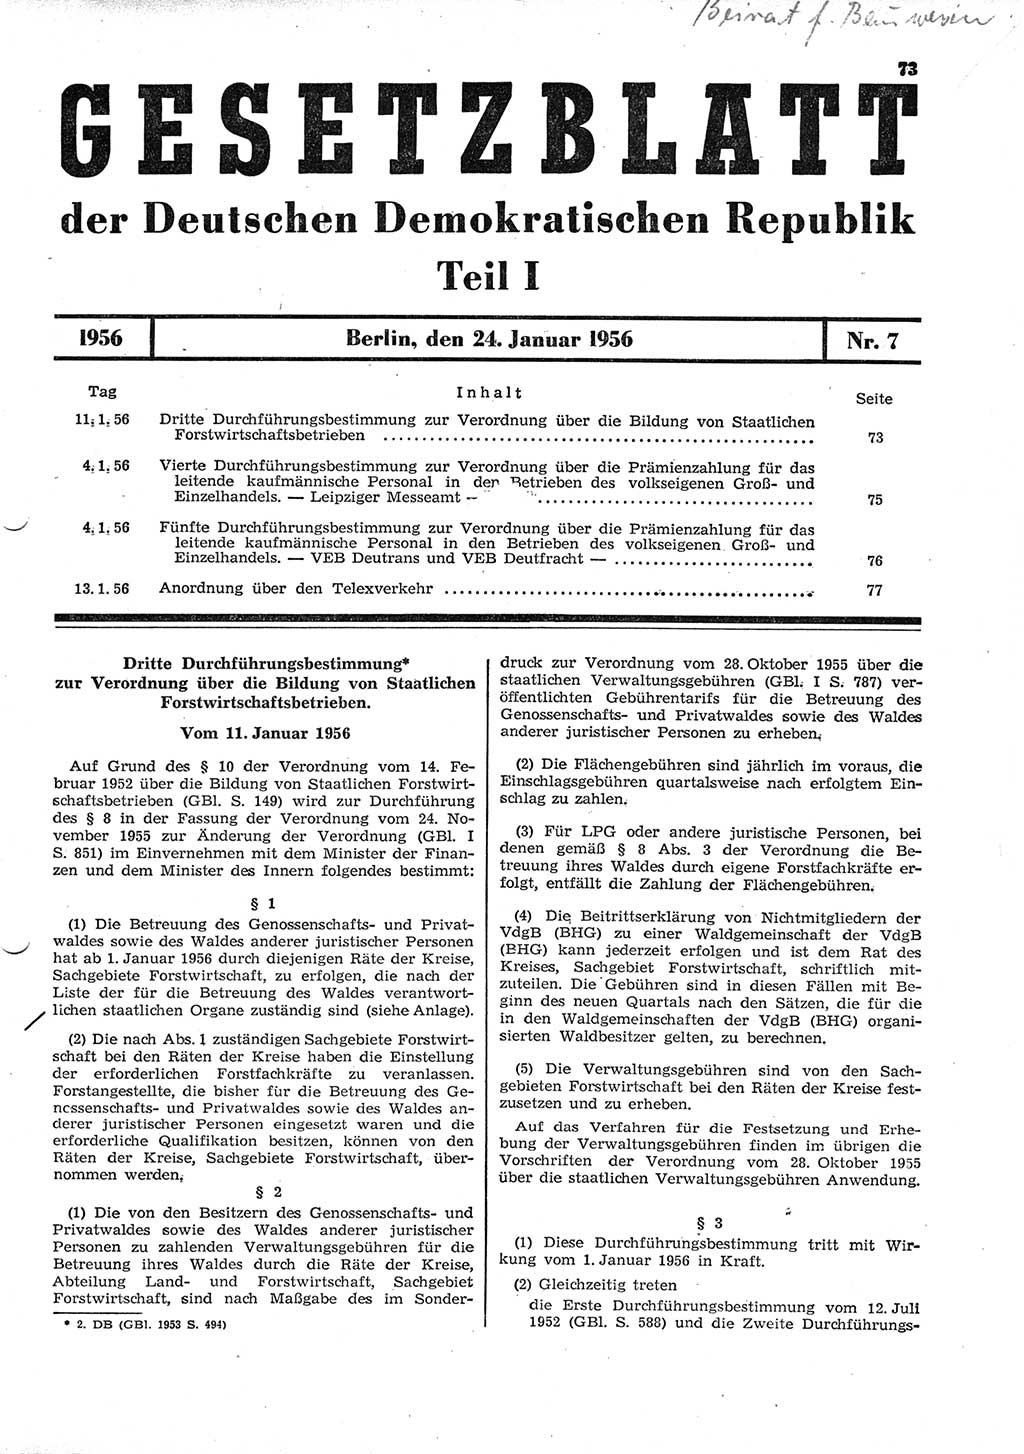 Gesetzblatt (GBl.) der Deutschen Demokratischen Republik (DDR) Teil Ⅰ 1956, Seite 73 (GBl. DDR Ⅰ 1956, S. 73)